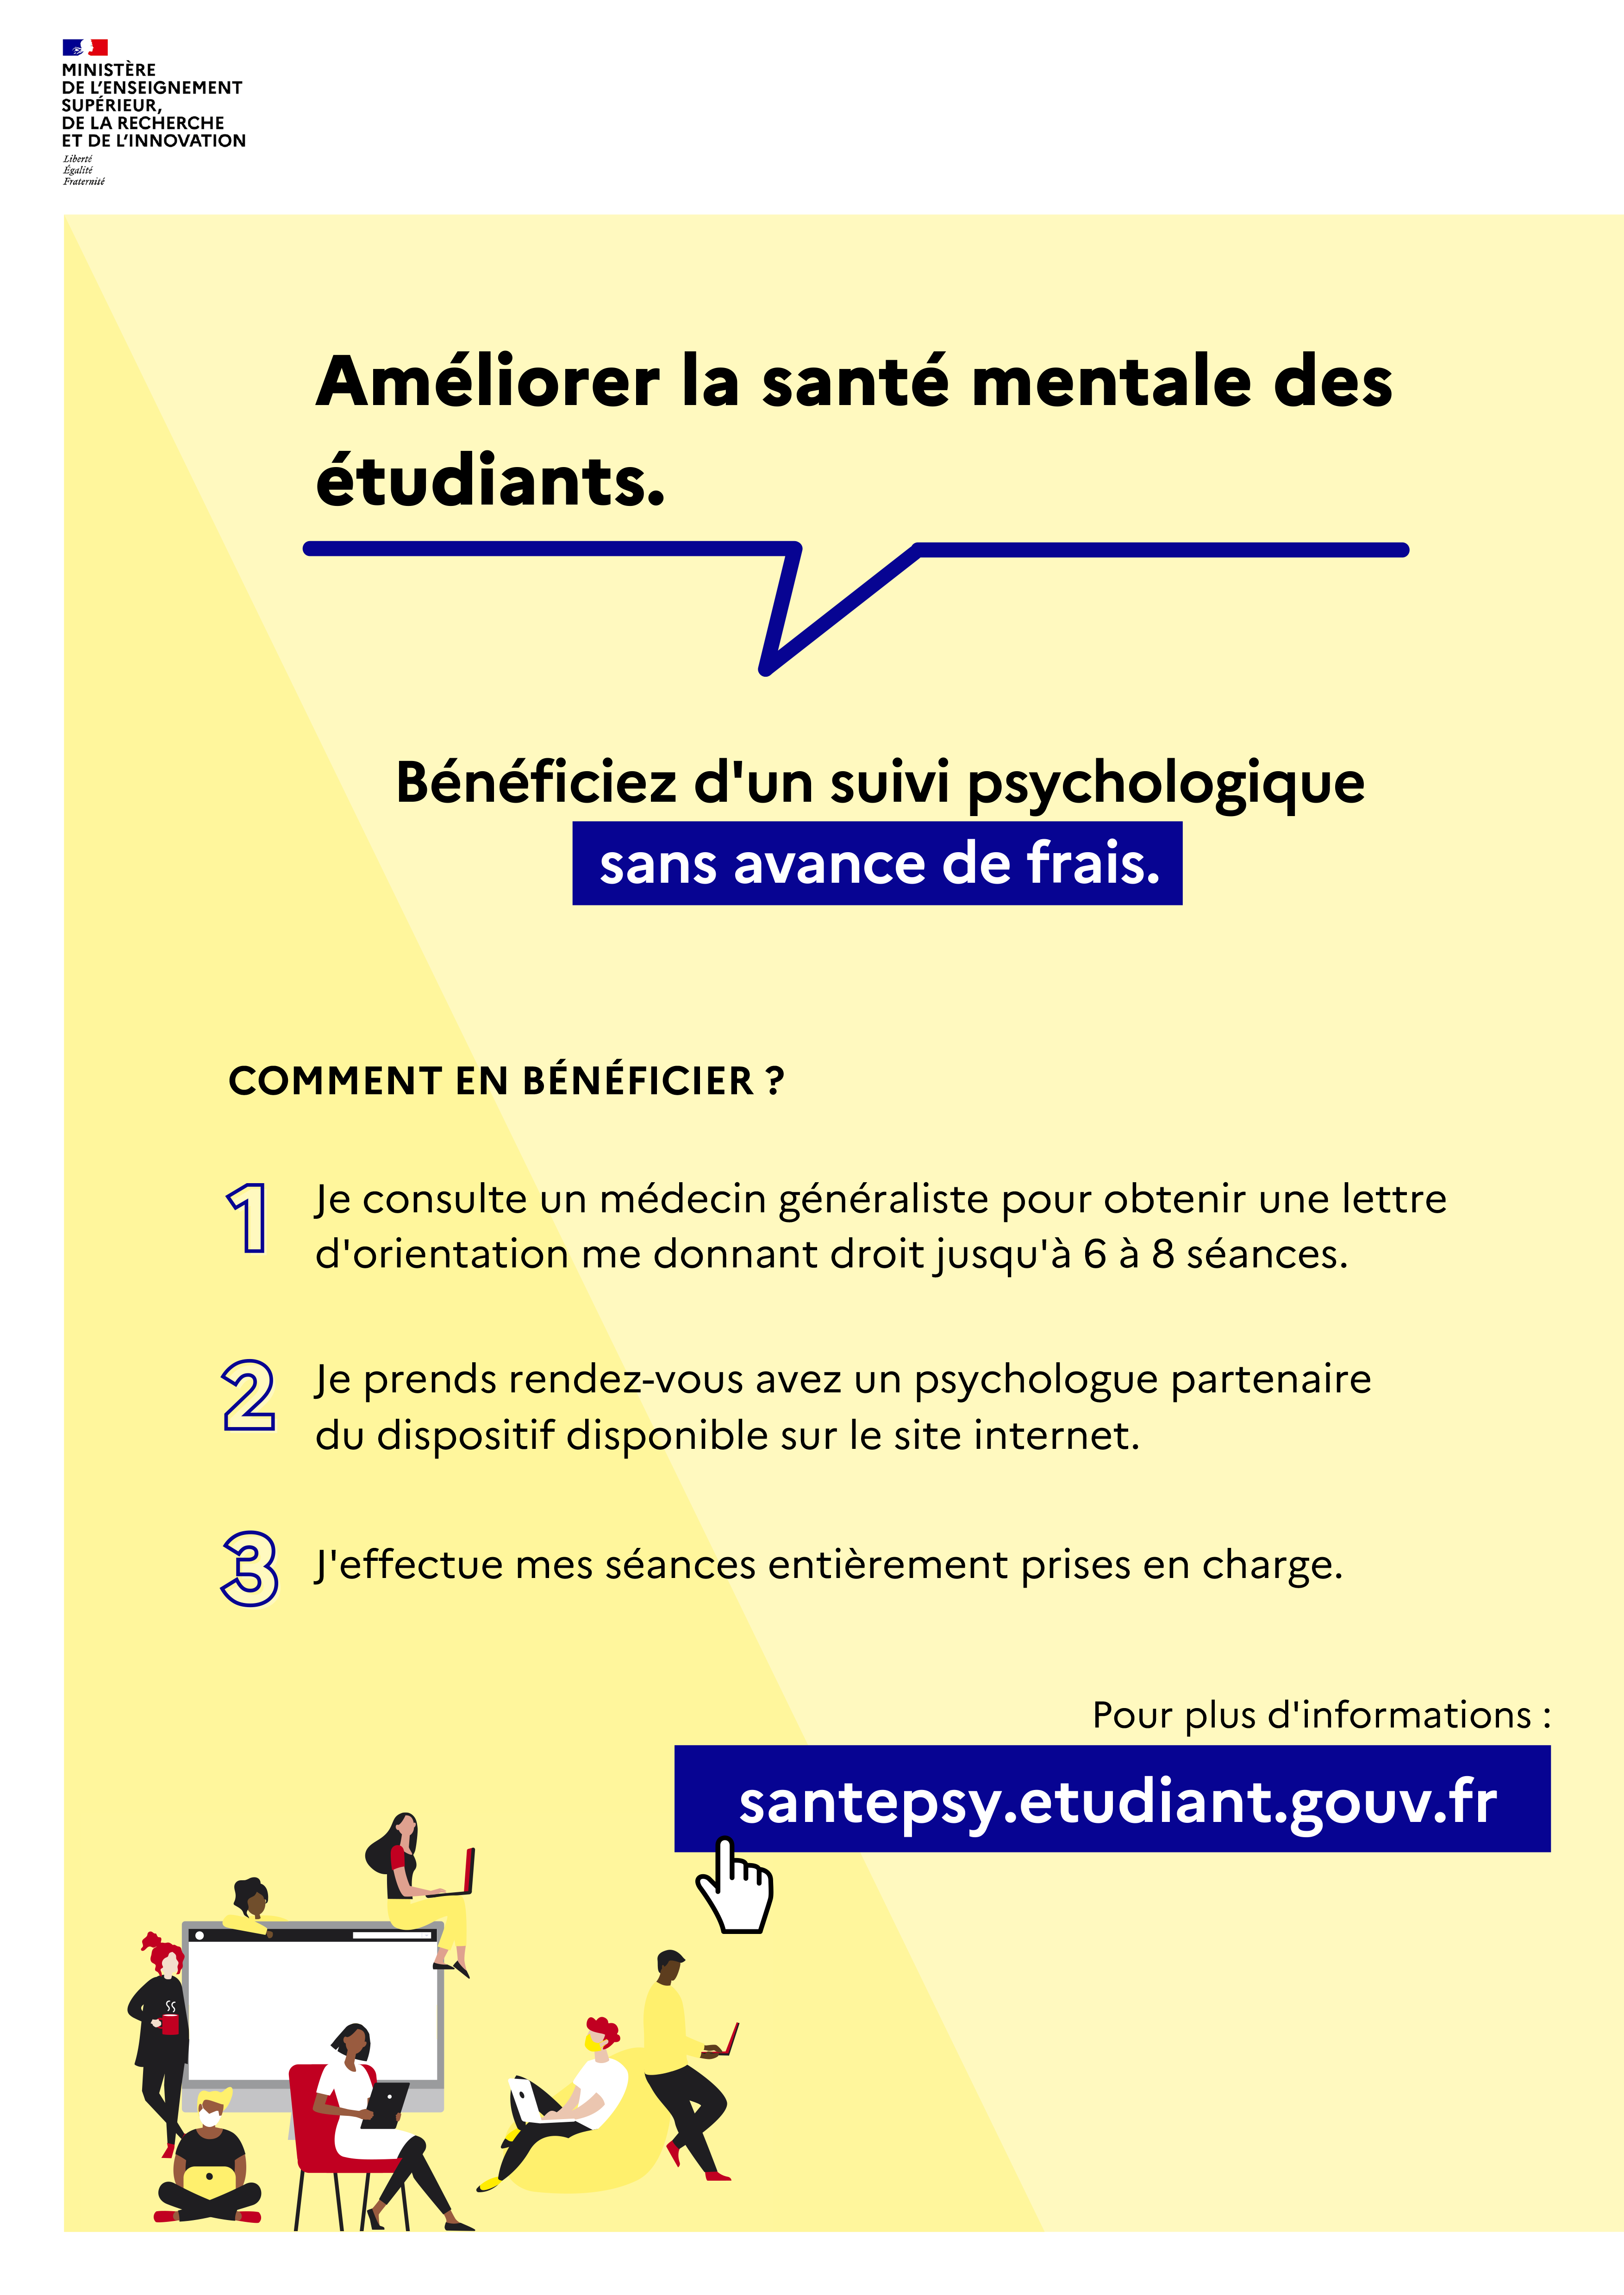 santepsy.etudiant.gouv.fr